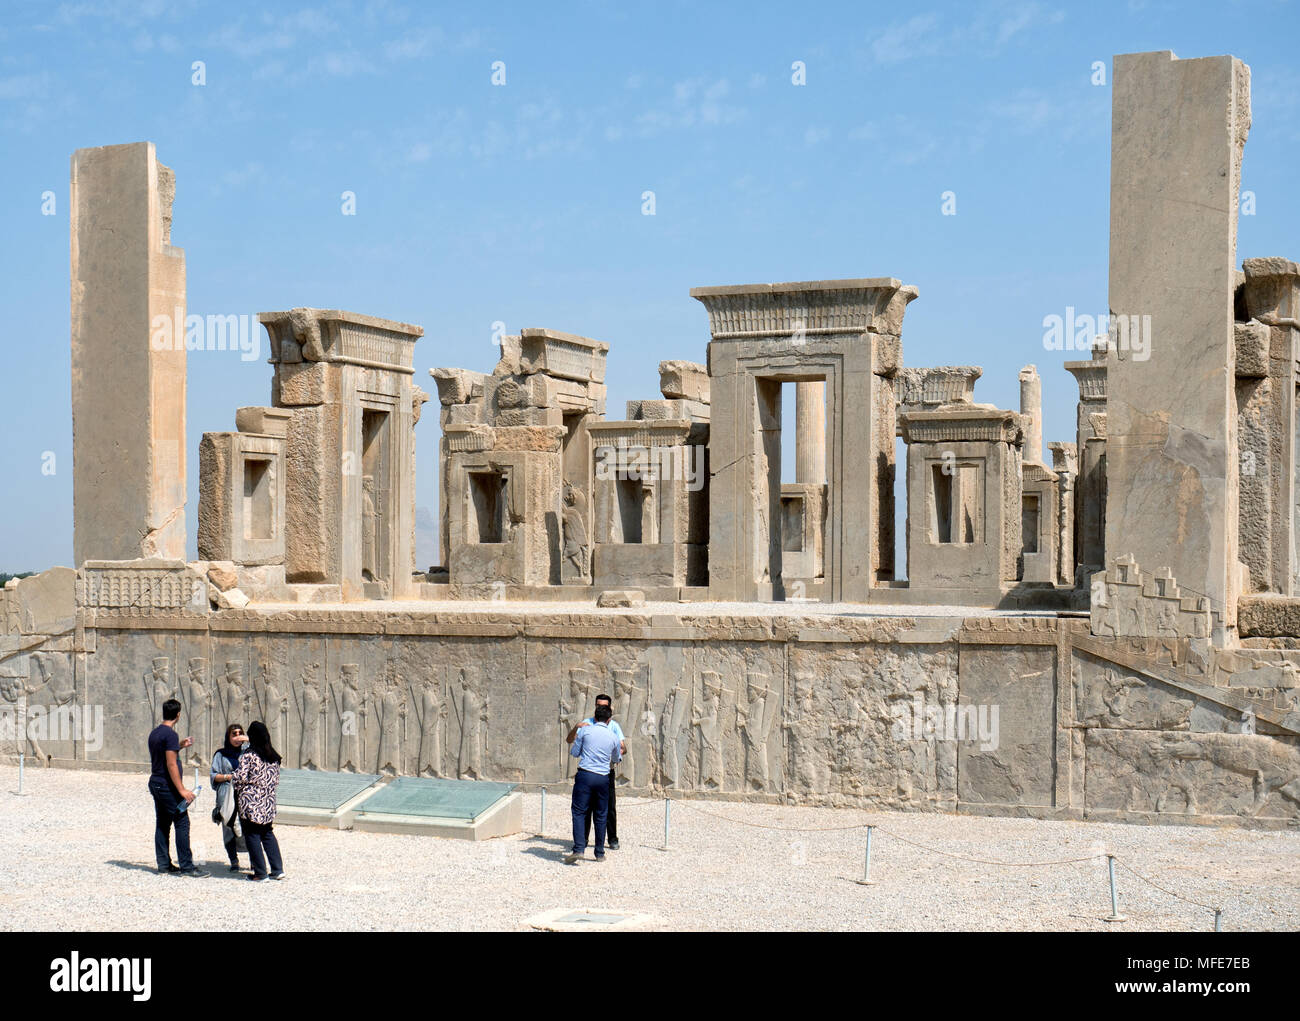 Shiraz, Iran - August 2, 2016: Touristen in Persepolis, die Hauptstadt des persischen Reichs während der Achämenidischen Zeit (Ca. 550 - 330 v. Chr.). Neben Shi Stockfoto